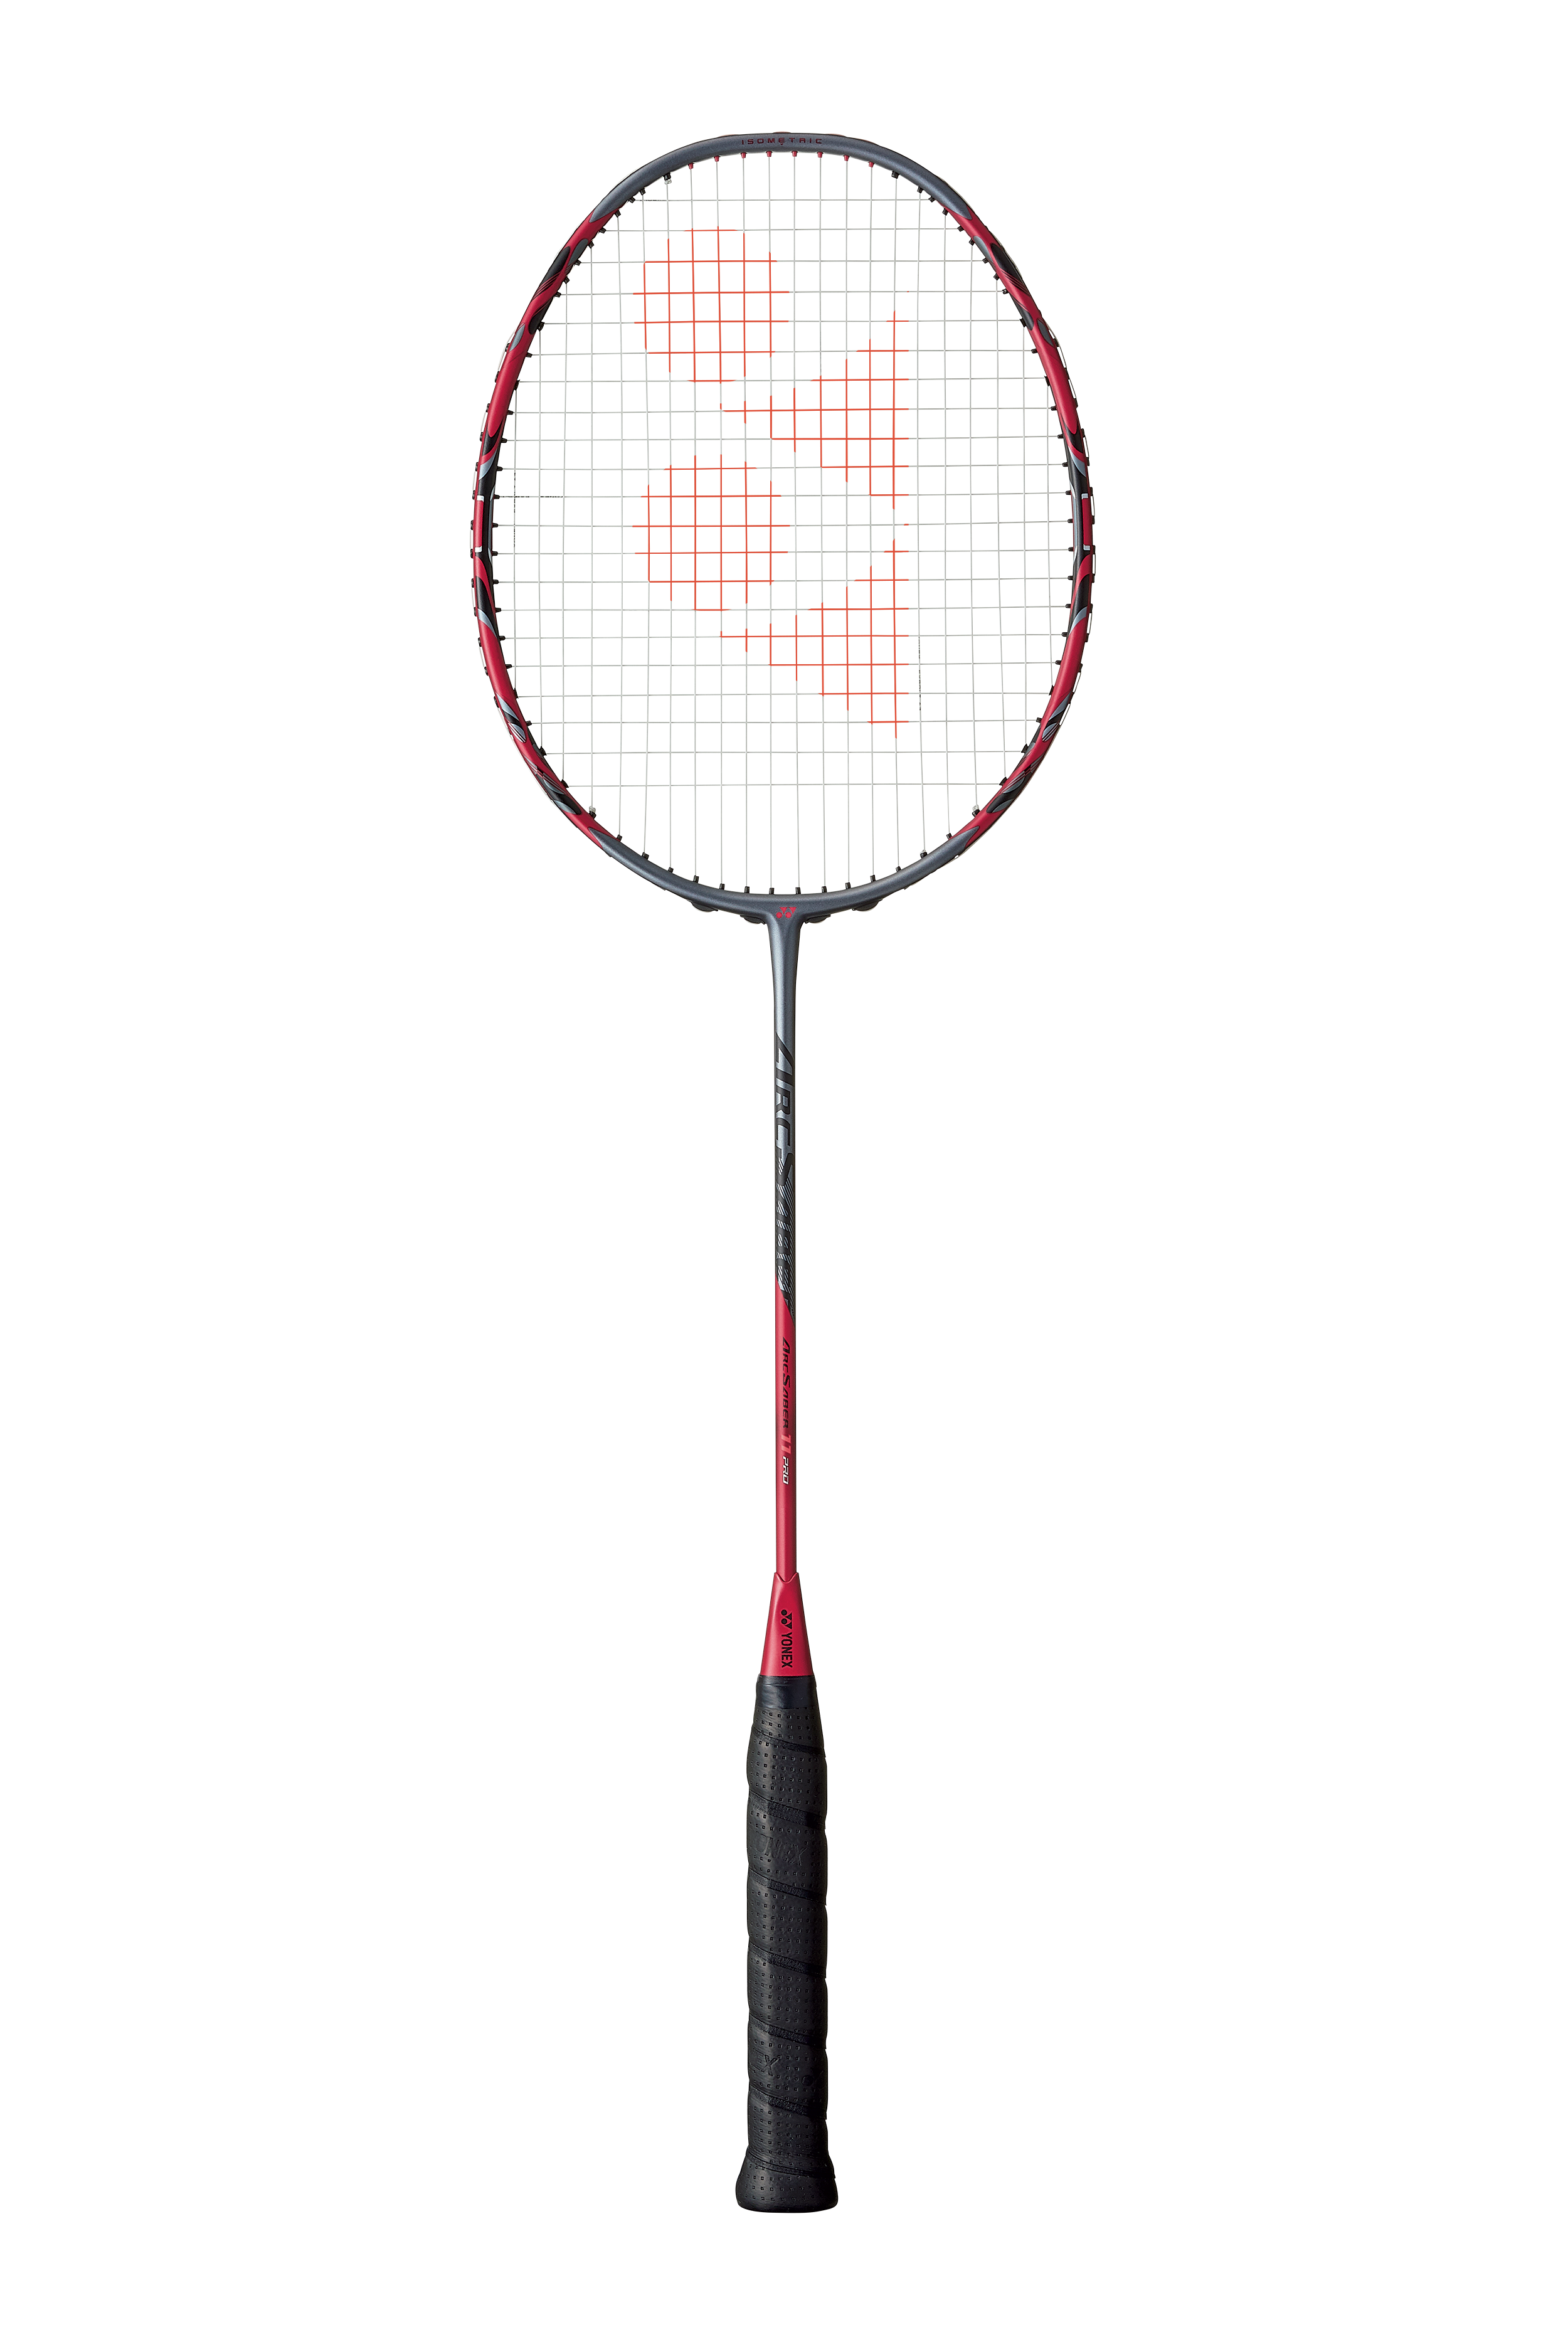 Yonex ArcSaber 11 Pro Badminton Racket